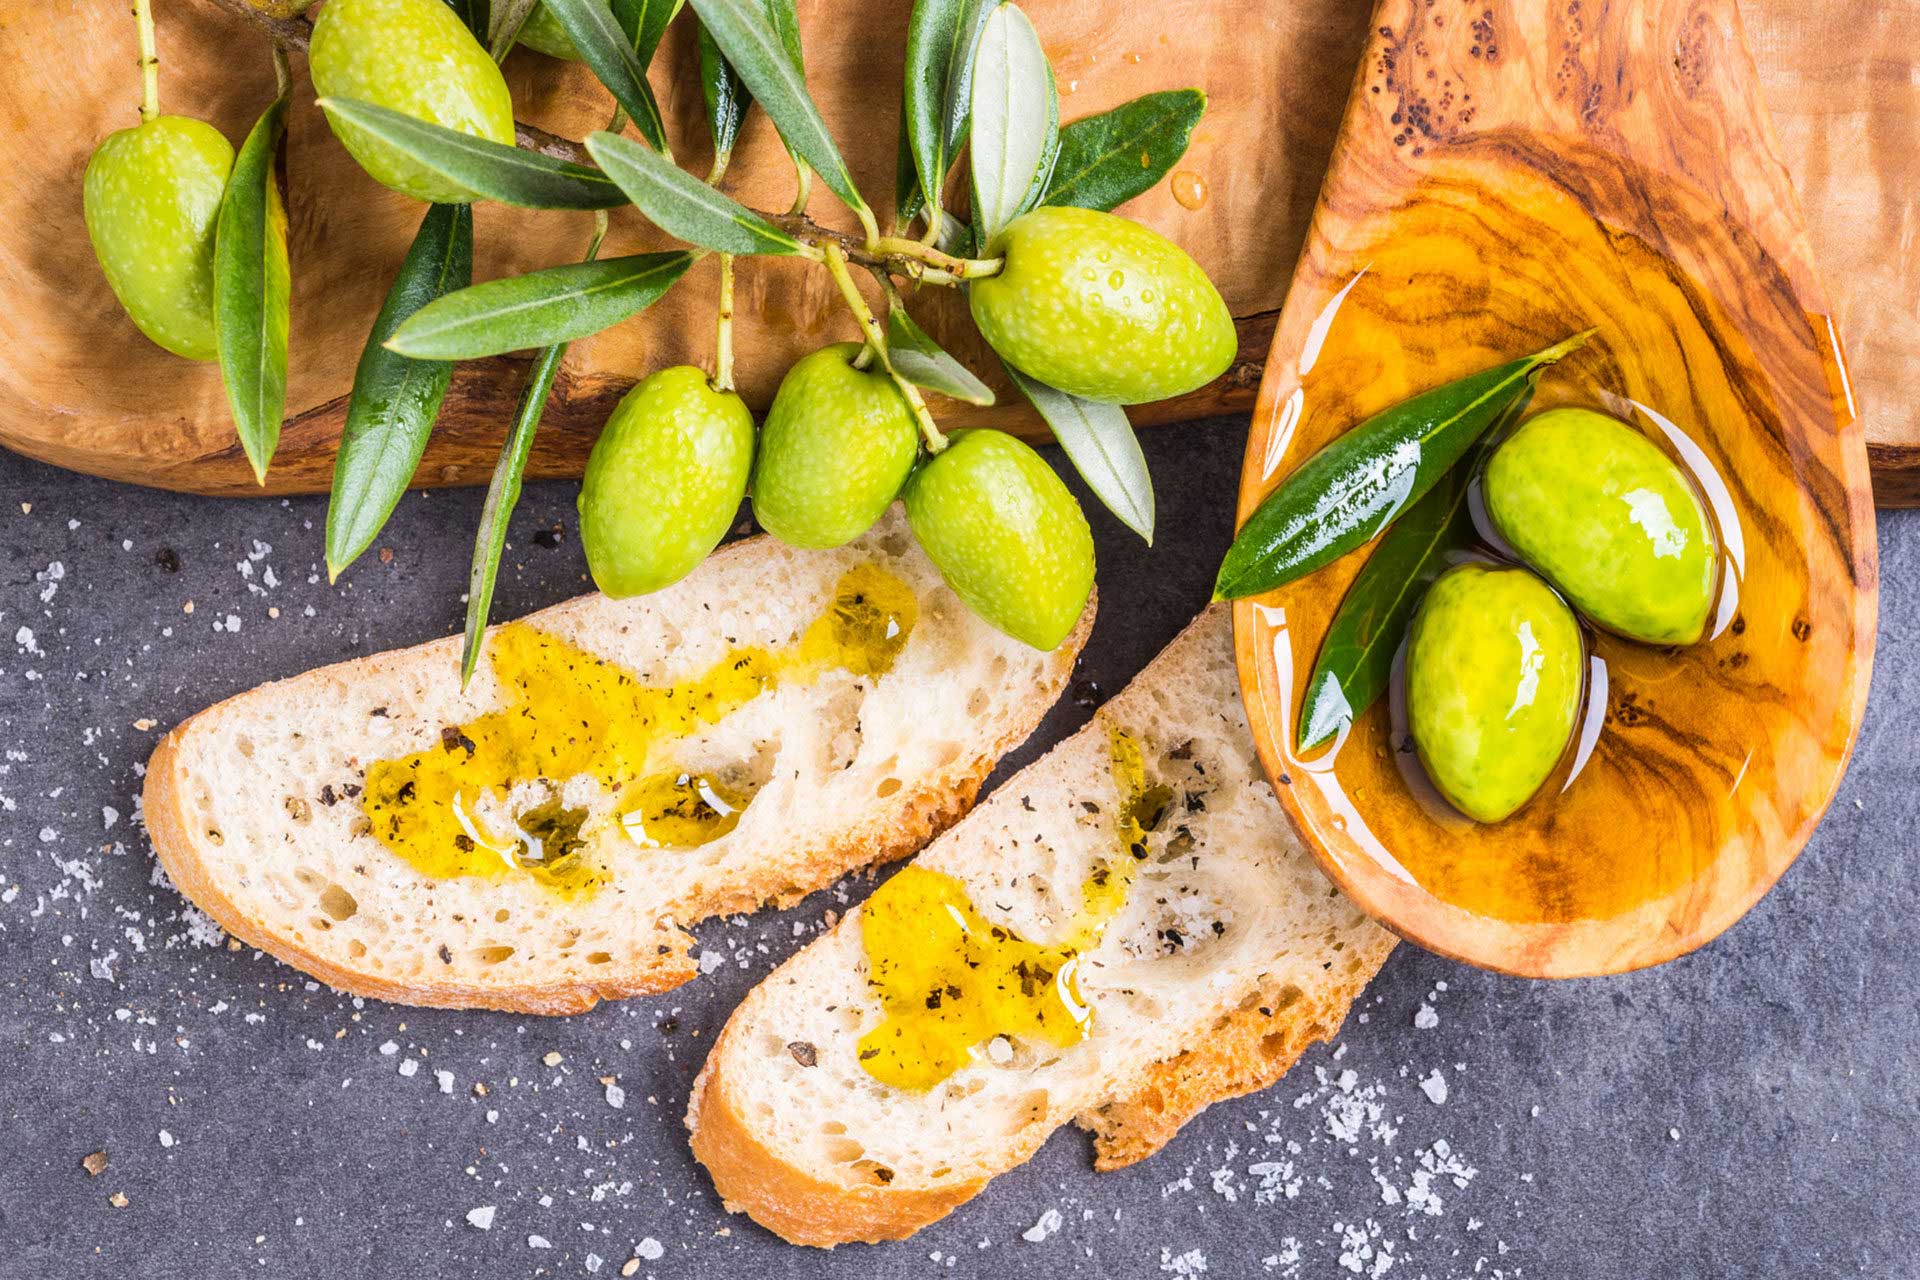 L’oro di spello: festival gastronomico dedicato all'olio d'oliva.